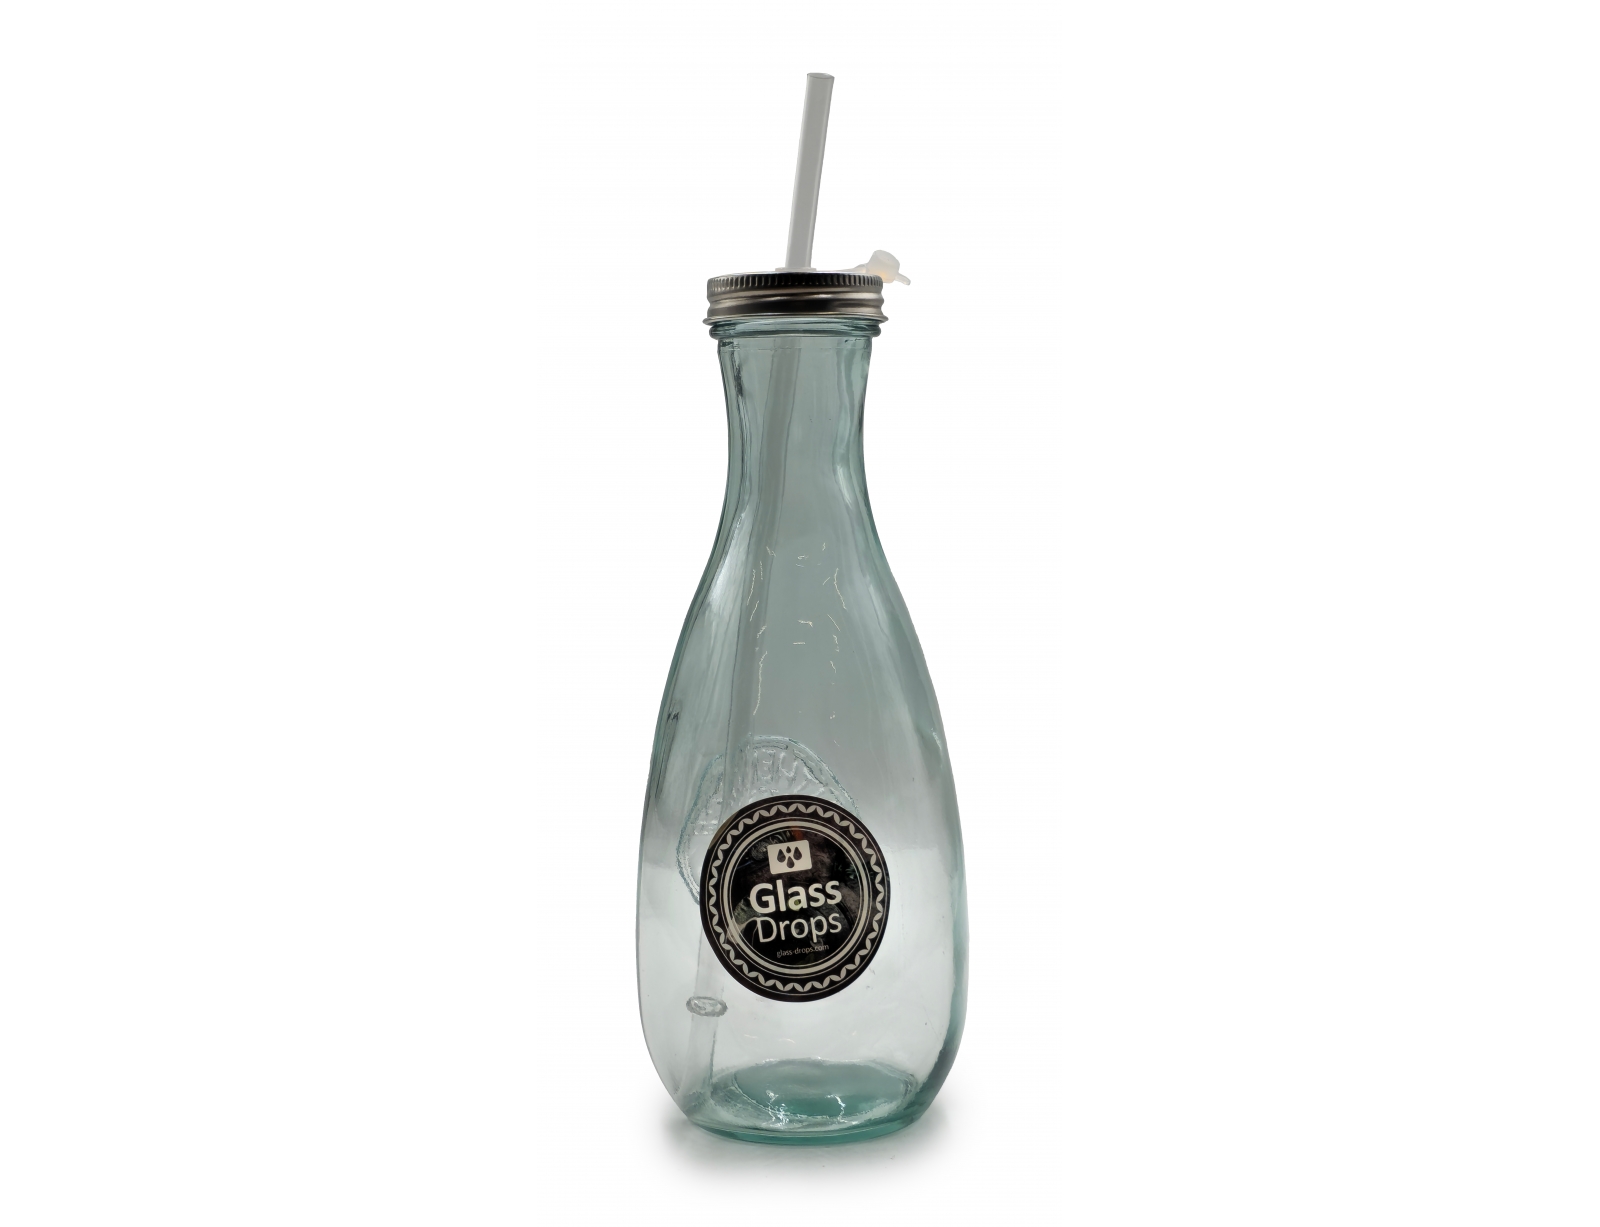 Εικόνα Μπουκάλι Glass Drops Authentic (5927) Με καλαμάκι, Aπό 100% ανακυκλωμένο γυαλί, Xωρητικότητας 600ml, Διαστάσεων Ø 9 x Υ 27 cm